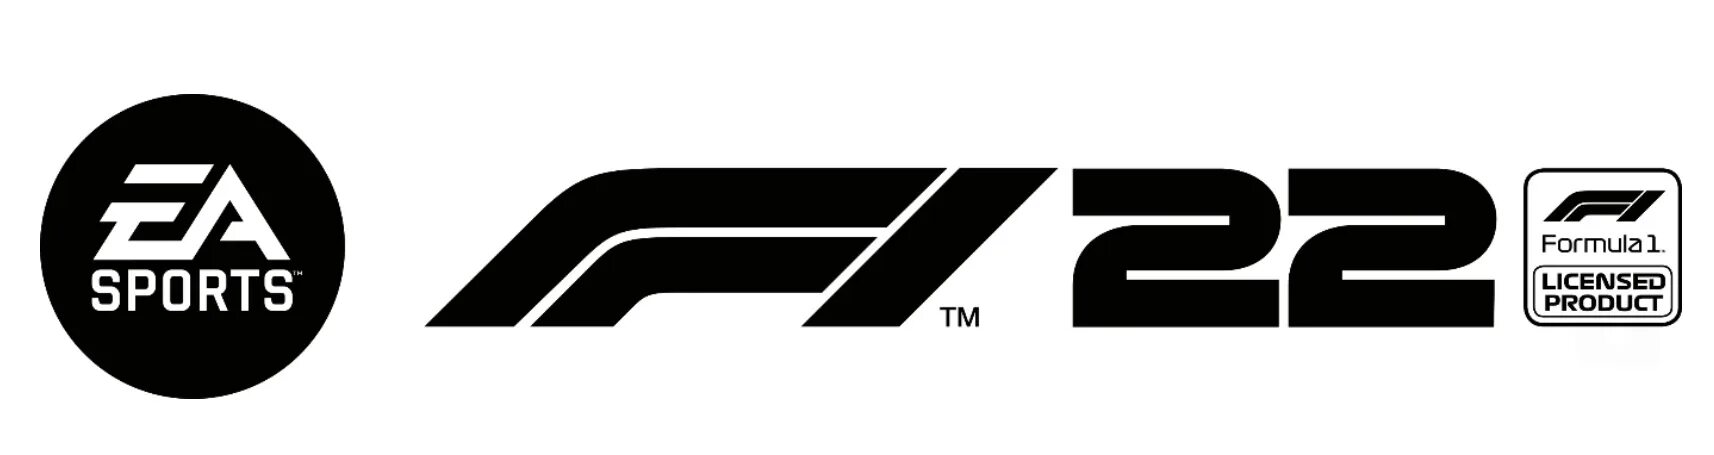 Формула 1 22. EA Sports f1 2002. Formula 1 logo. F1 22 логотип. EA Sports f1 22 logo.